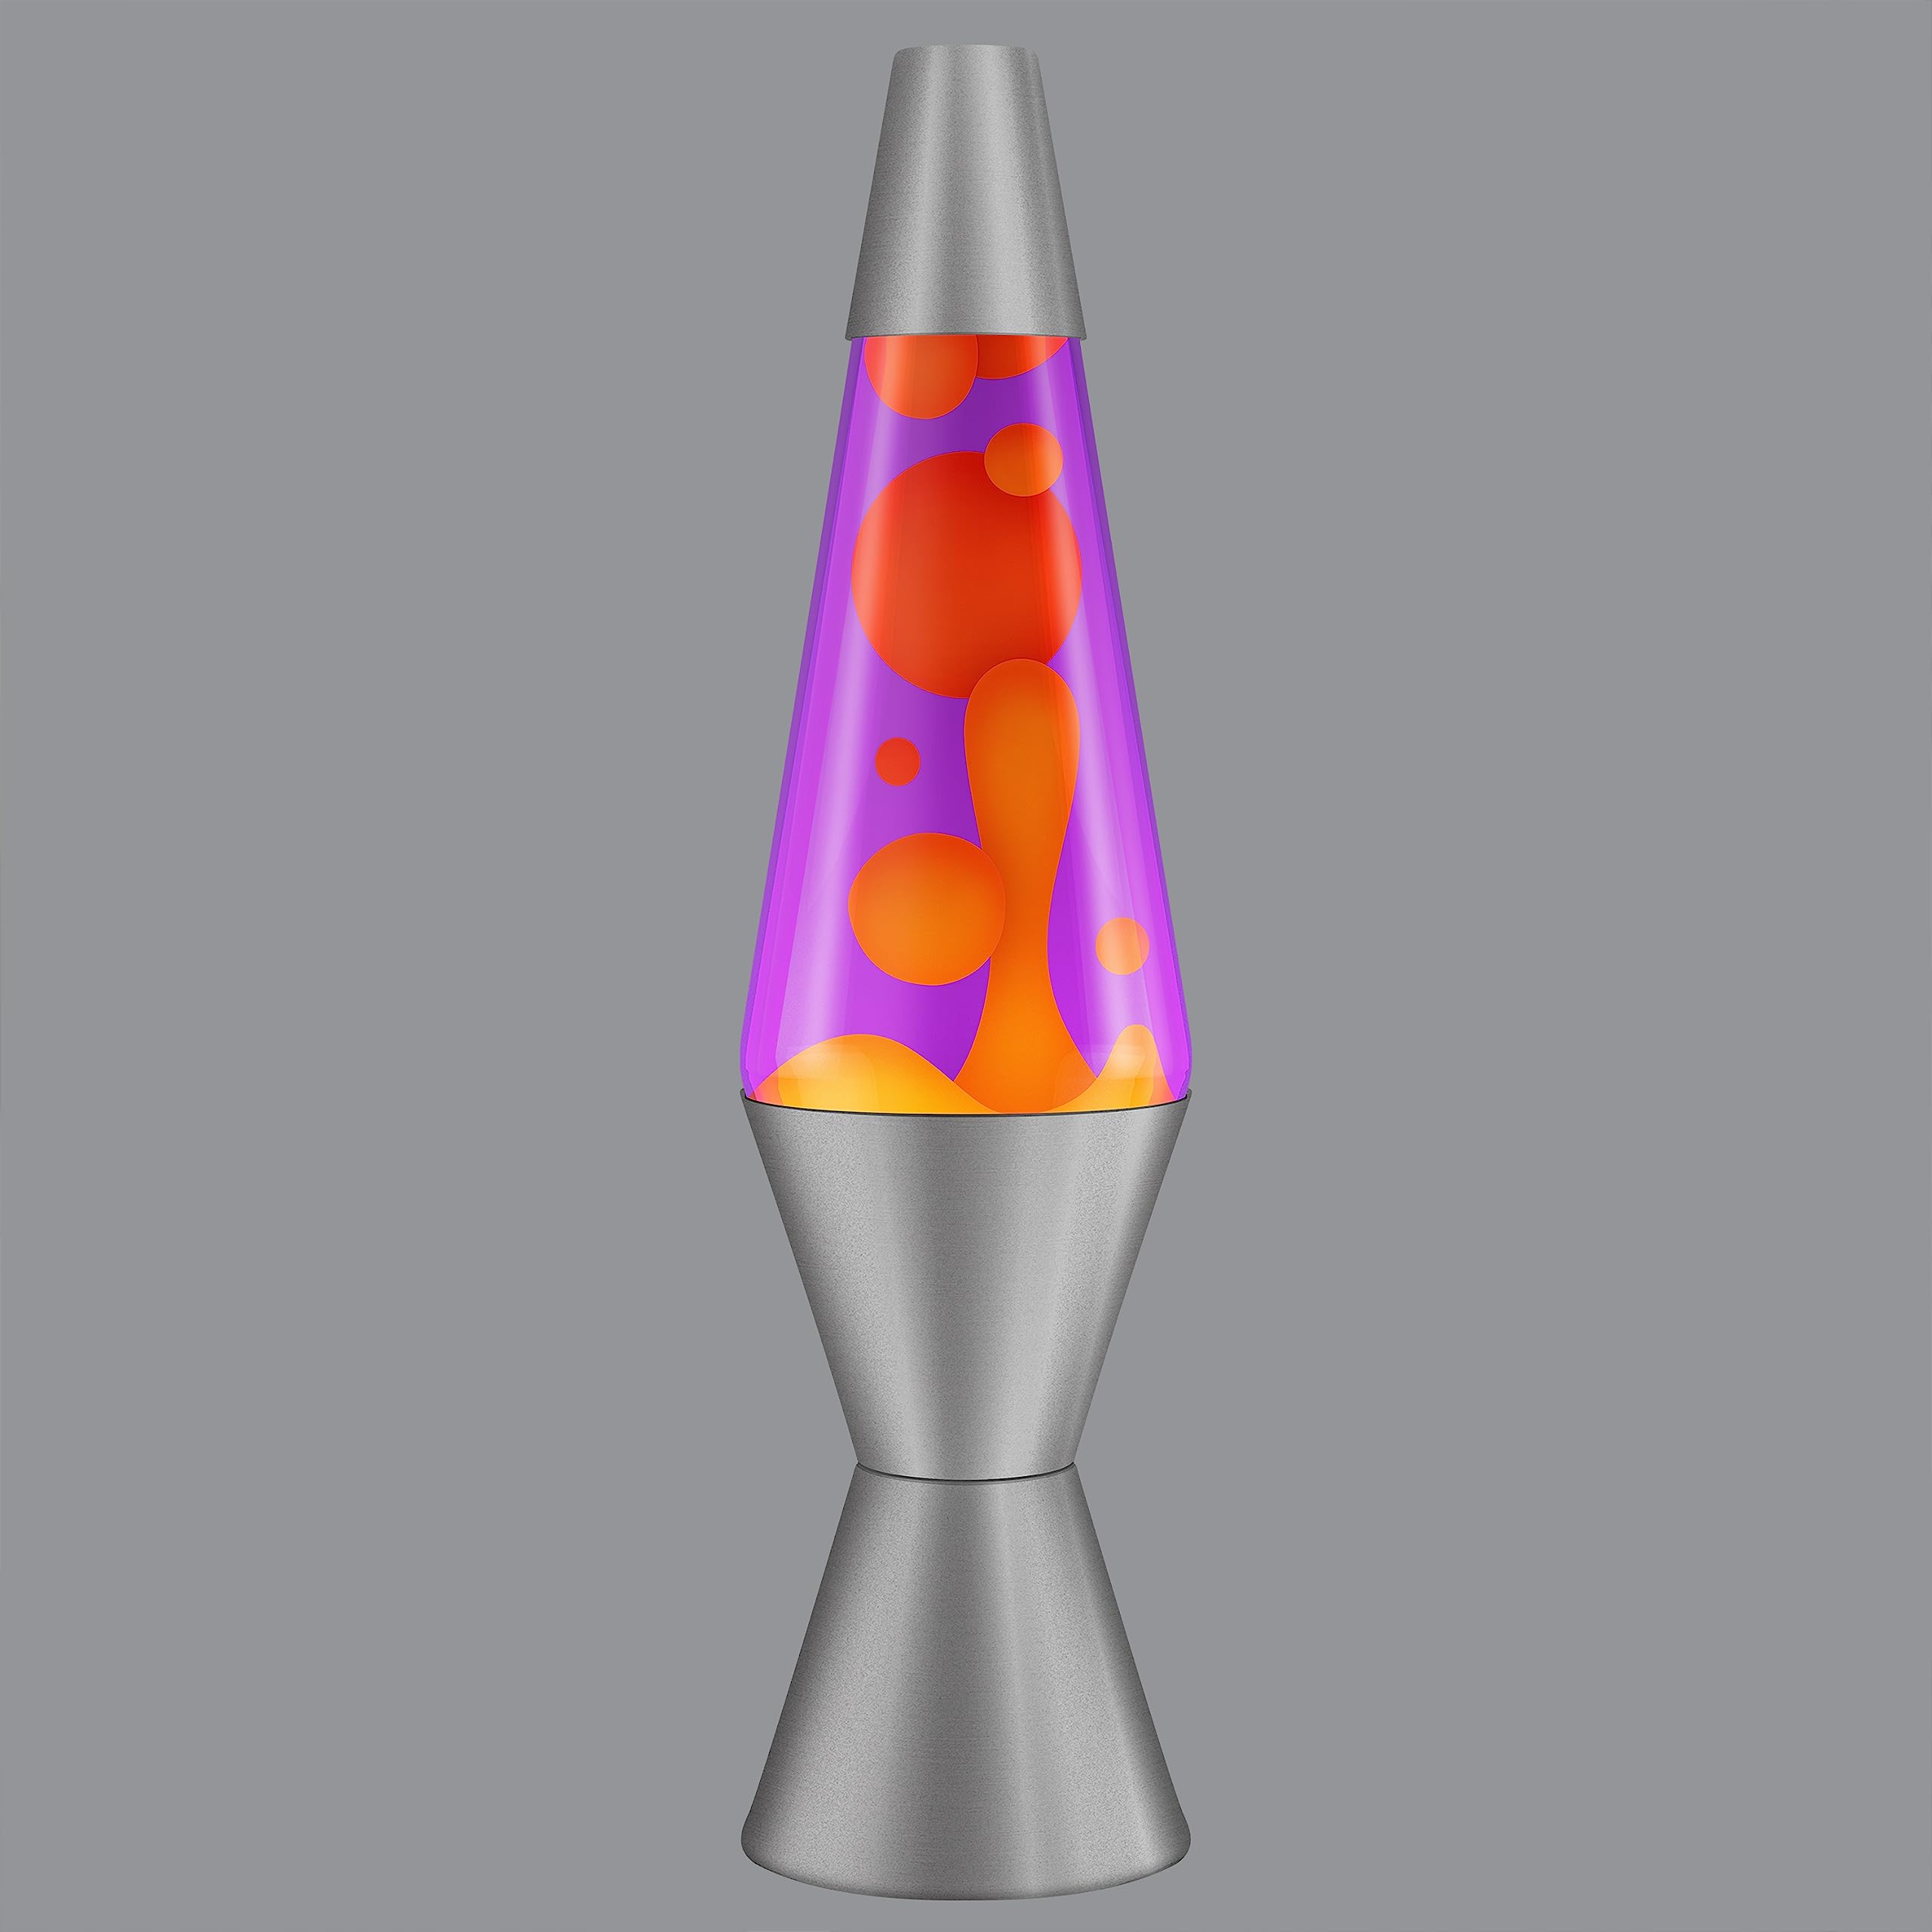 Lava Original Lamp - 14.5